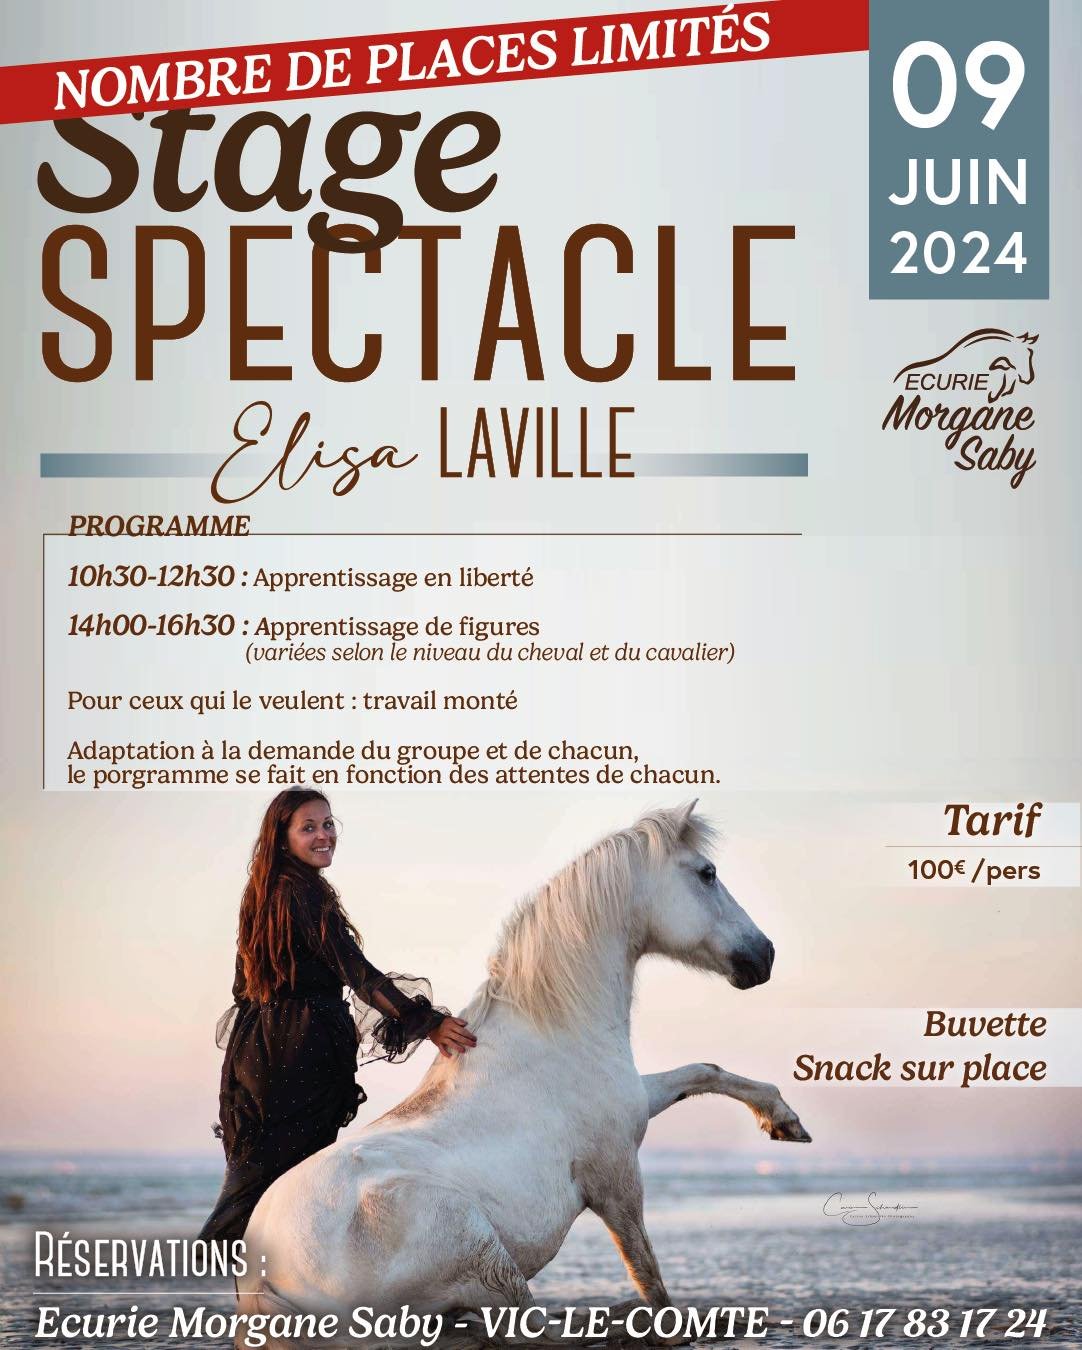 Stage Spectacle avec Elisa Laville à l’Écurie Morgane Saby Le 9 juin 2024, l’Écurie Morgane Saby accueillera un stage exceptionnel ...